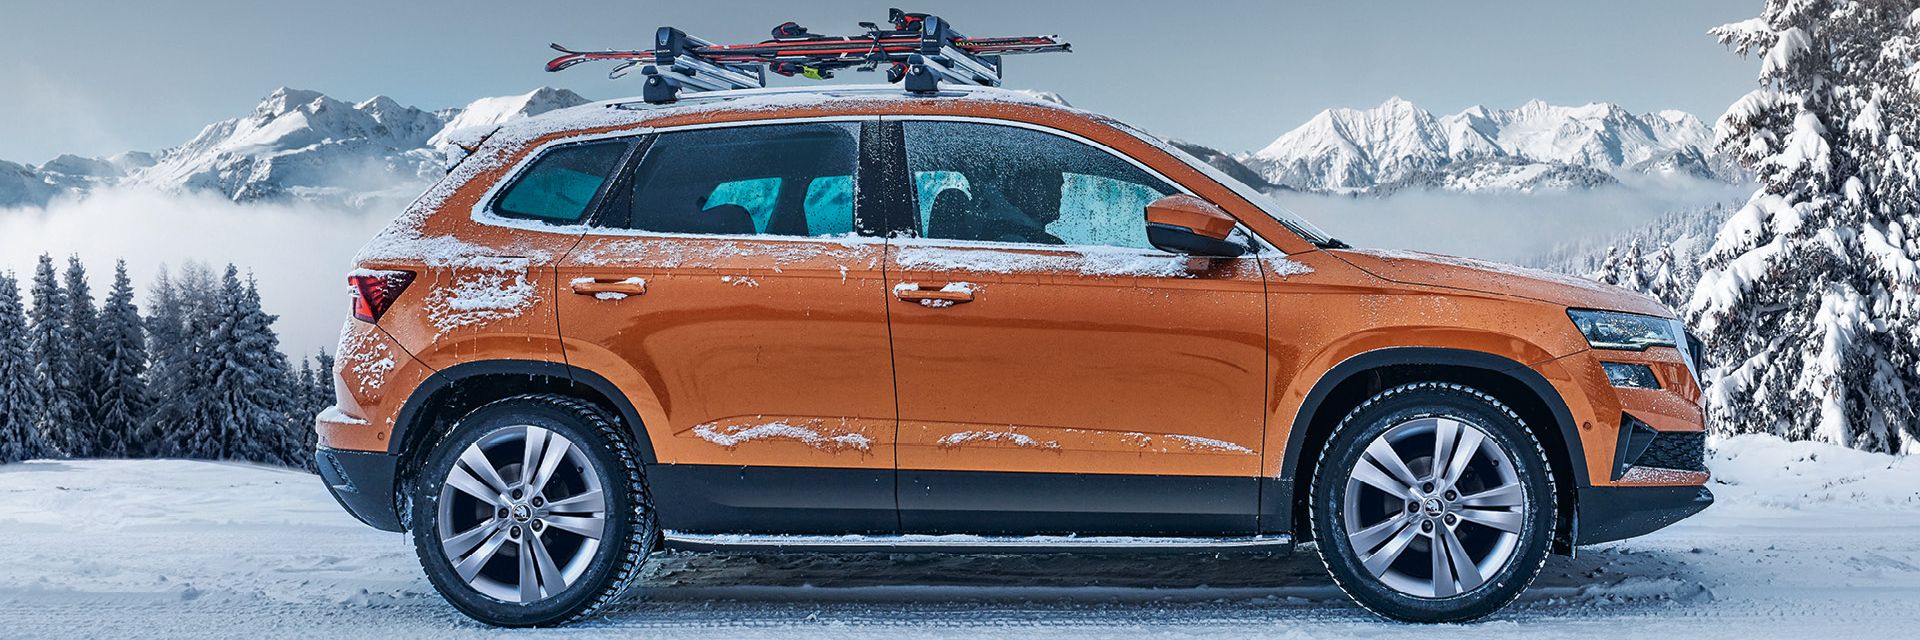 Ein Škoda Karoq mit Skiträger parkt in winterlicher Landschaft